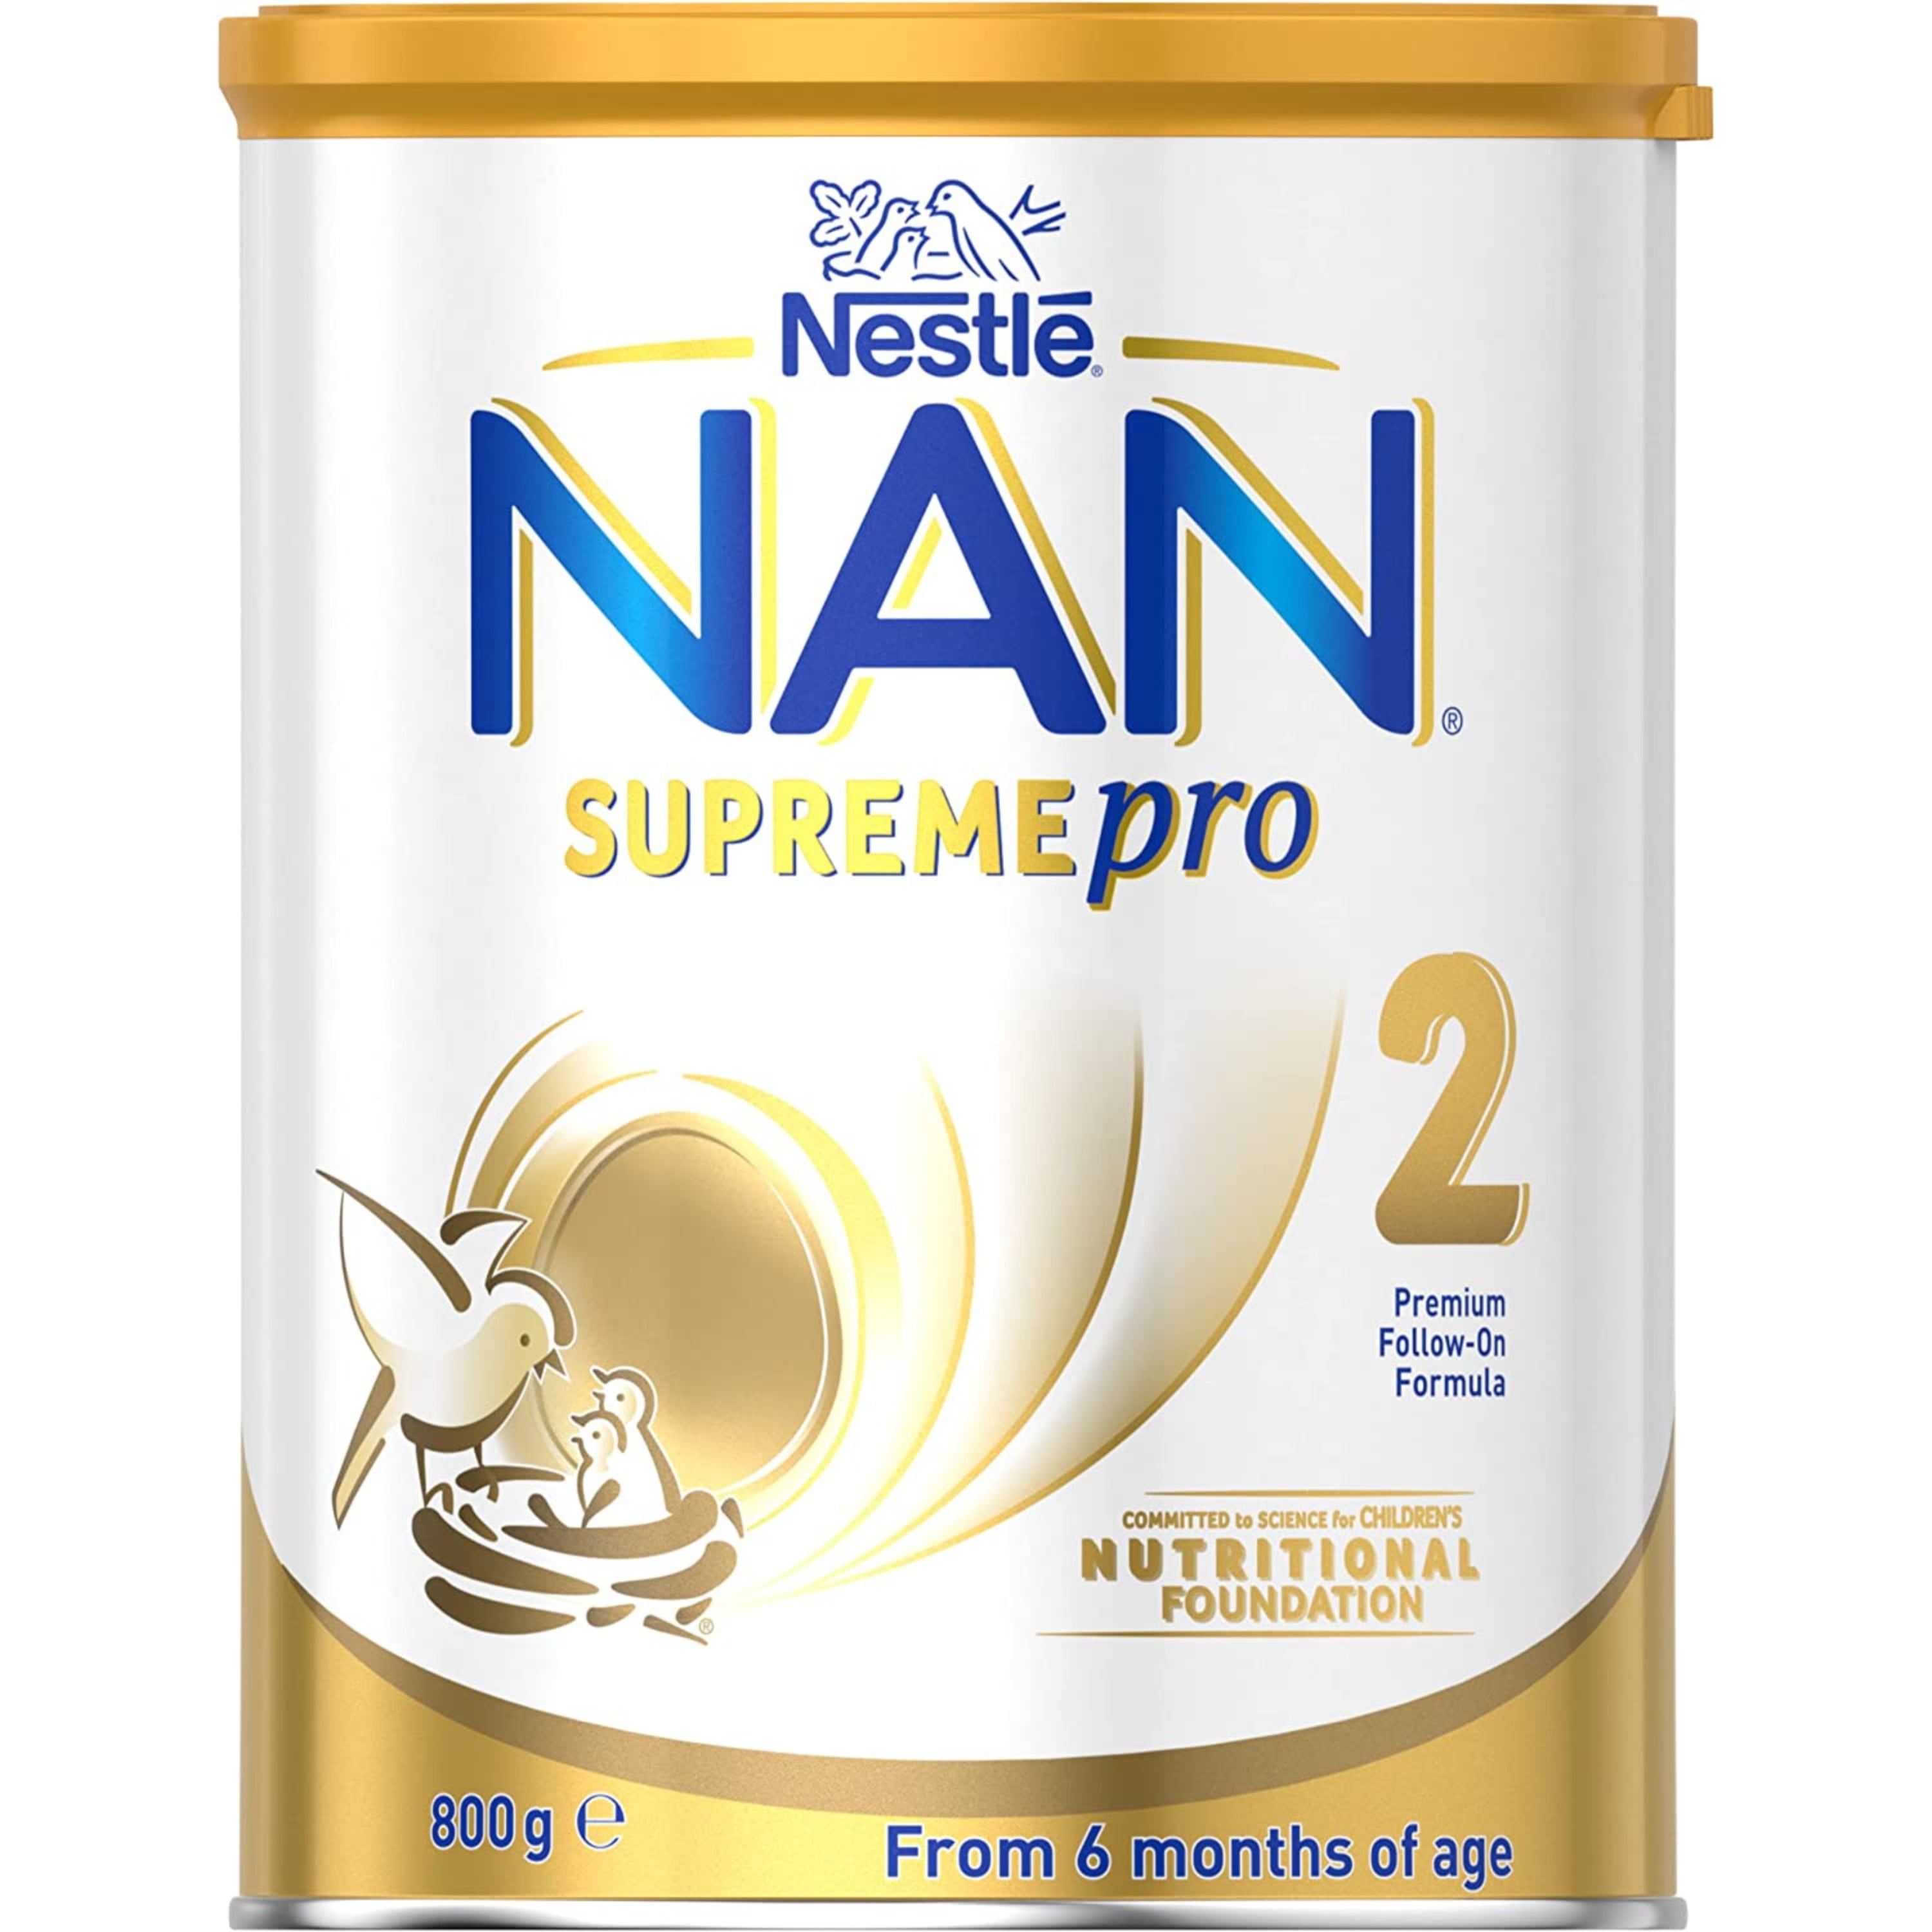 Leche en Polvo Nan Optipro 2 Nestle - 900 gr